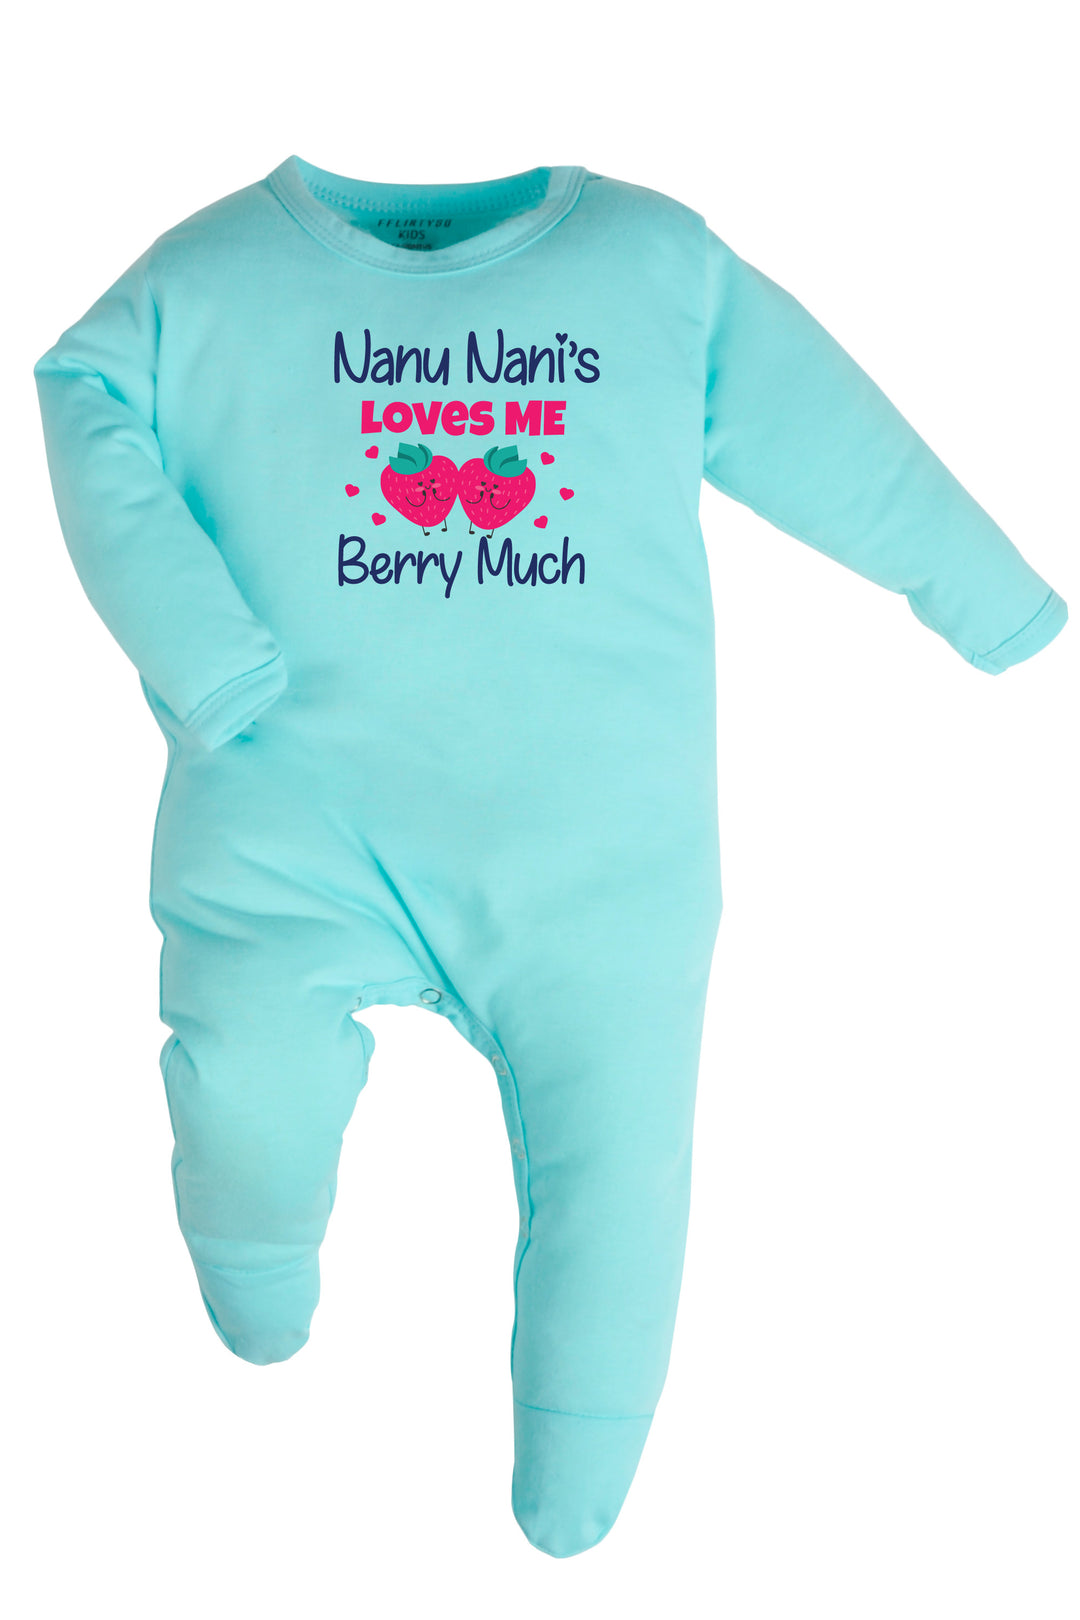 Nanu Nani Love Me Berry Much Baby Romper | Onesies